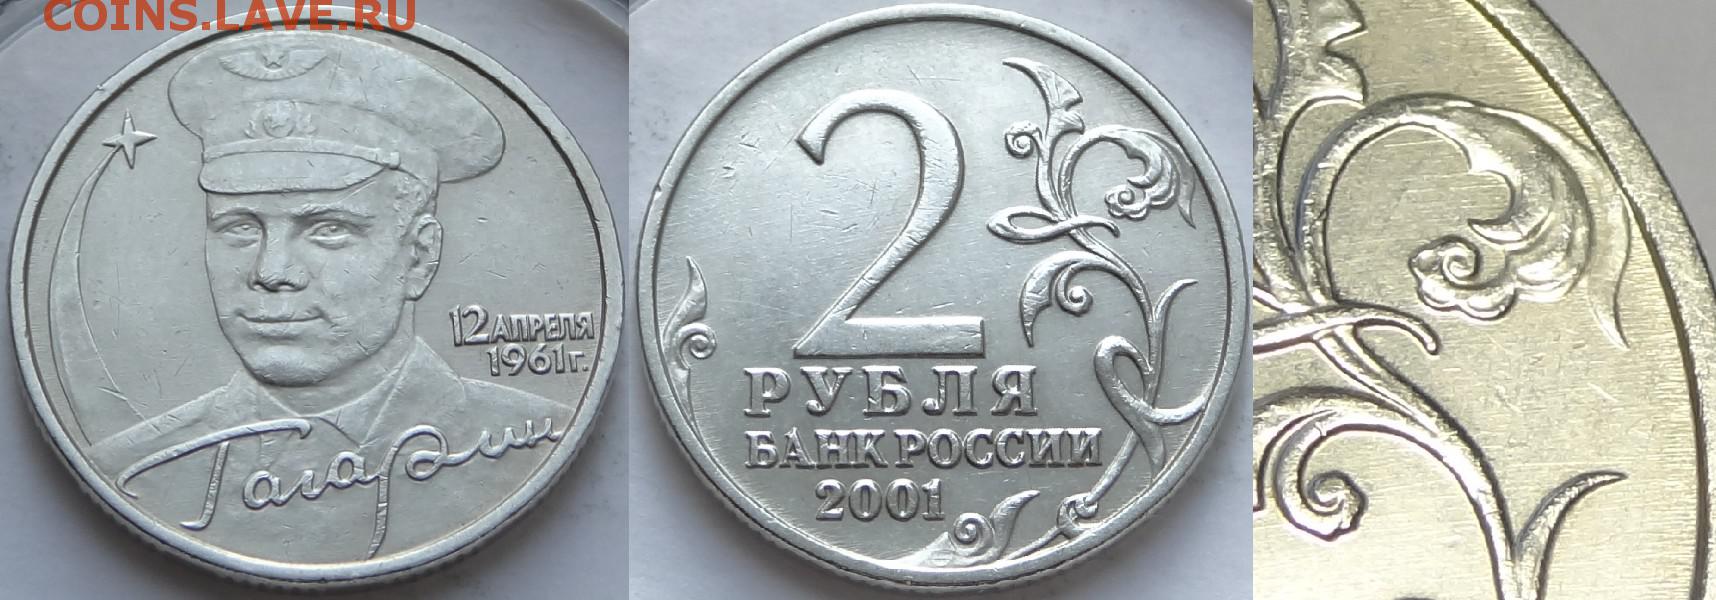 2 рубля 2001 года с гагариным. Монета Гагарин. Гагарин без монетного двора. 2 Рубля 2012 г. Нестеров.. Сколько стоит монета 2 рубля с Гагариным.